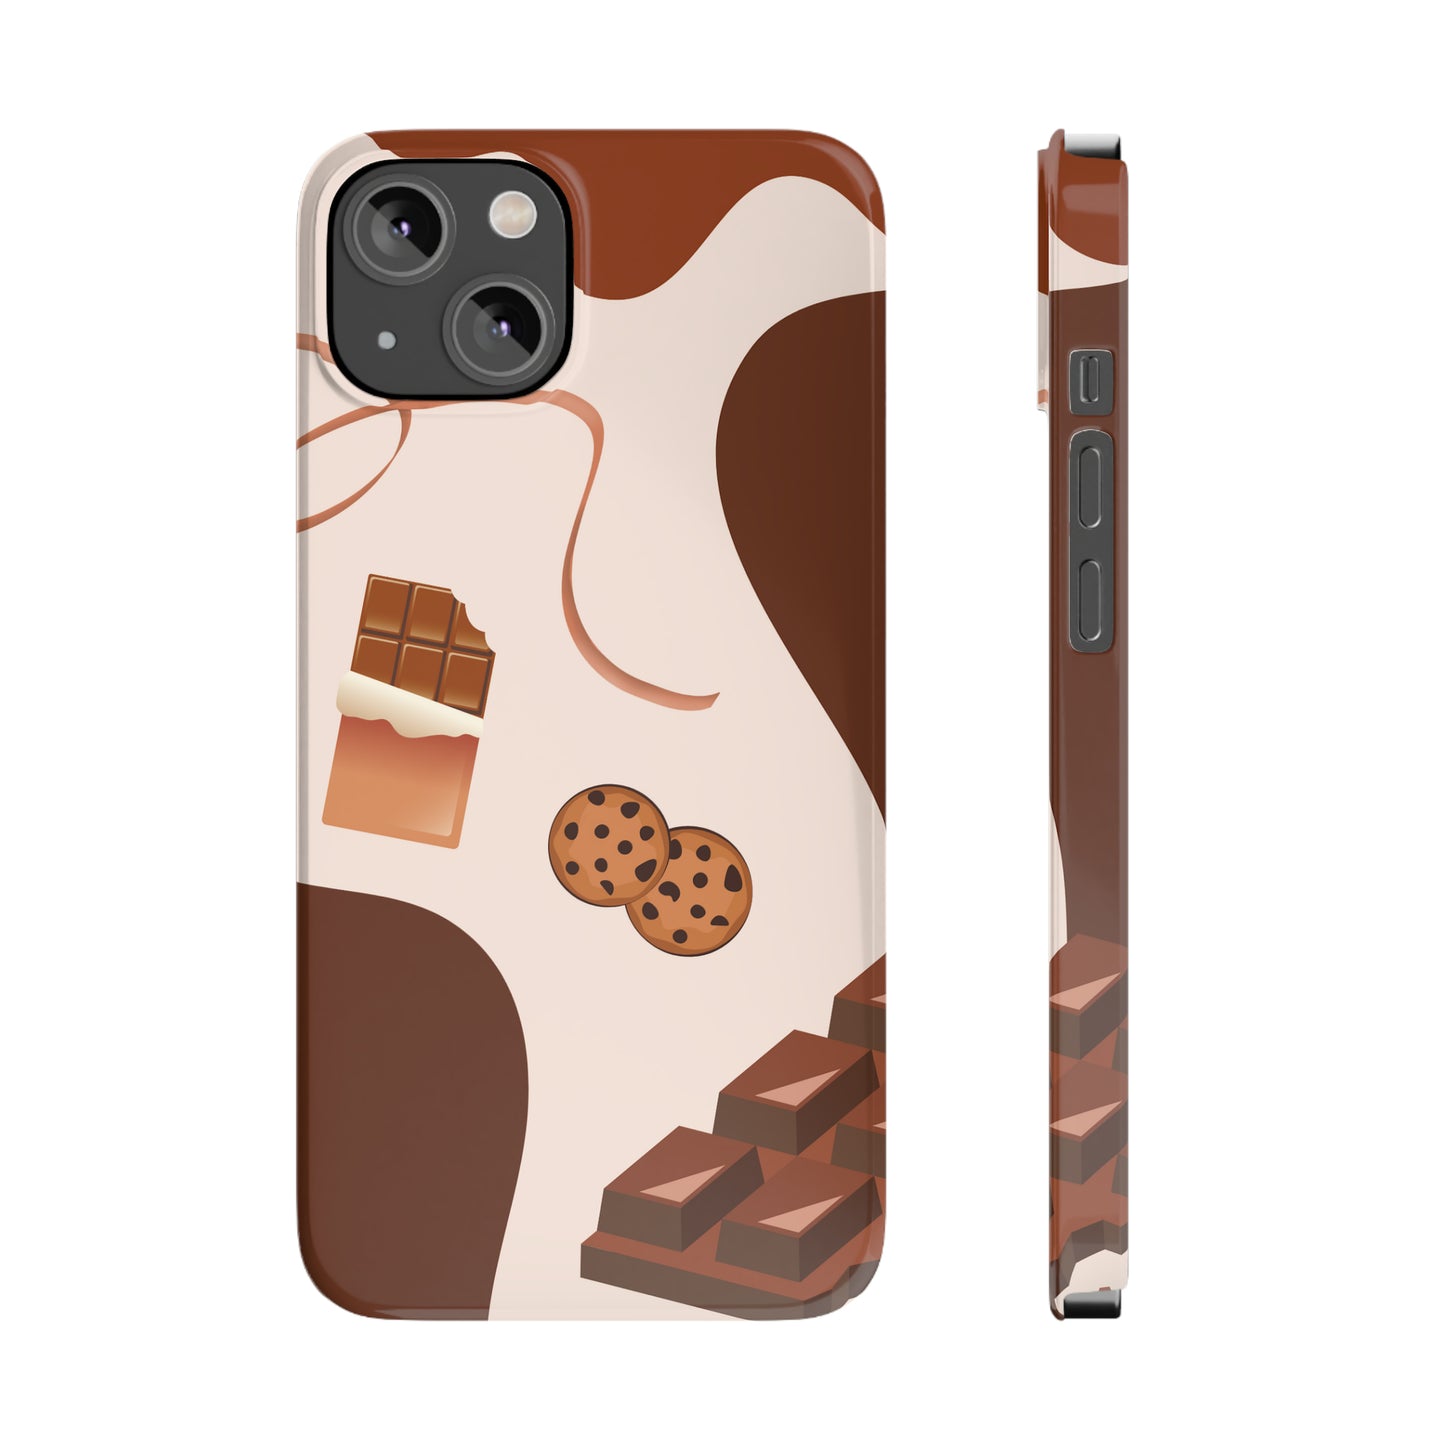 Choco Slim Phone Cases